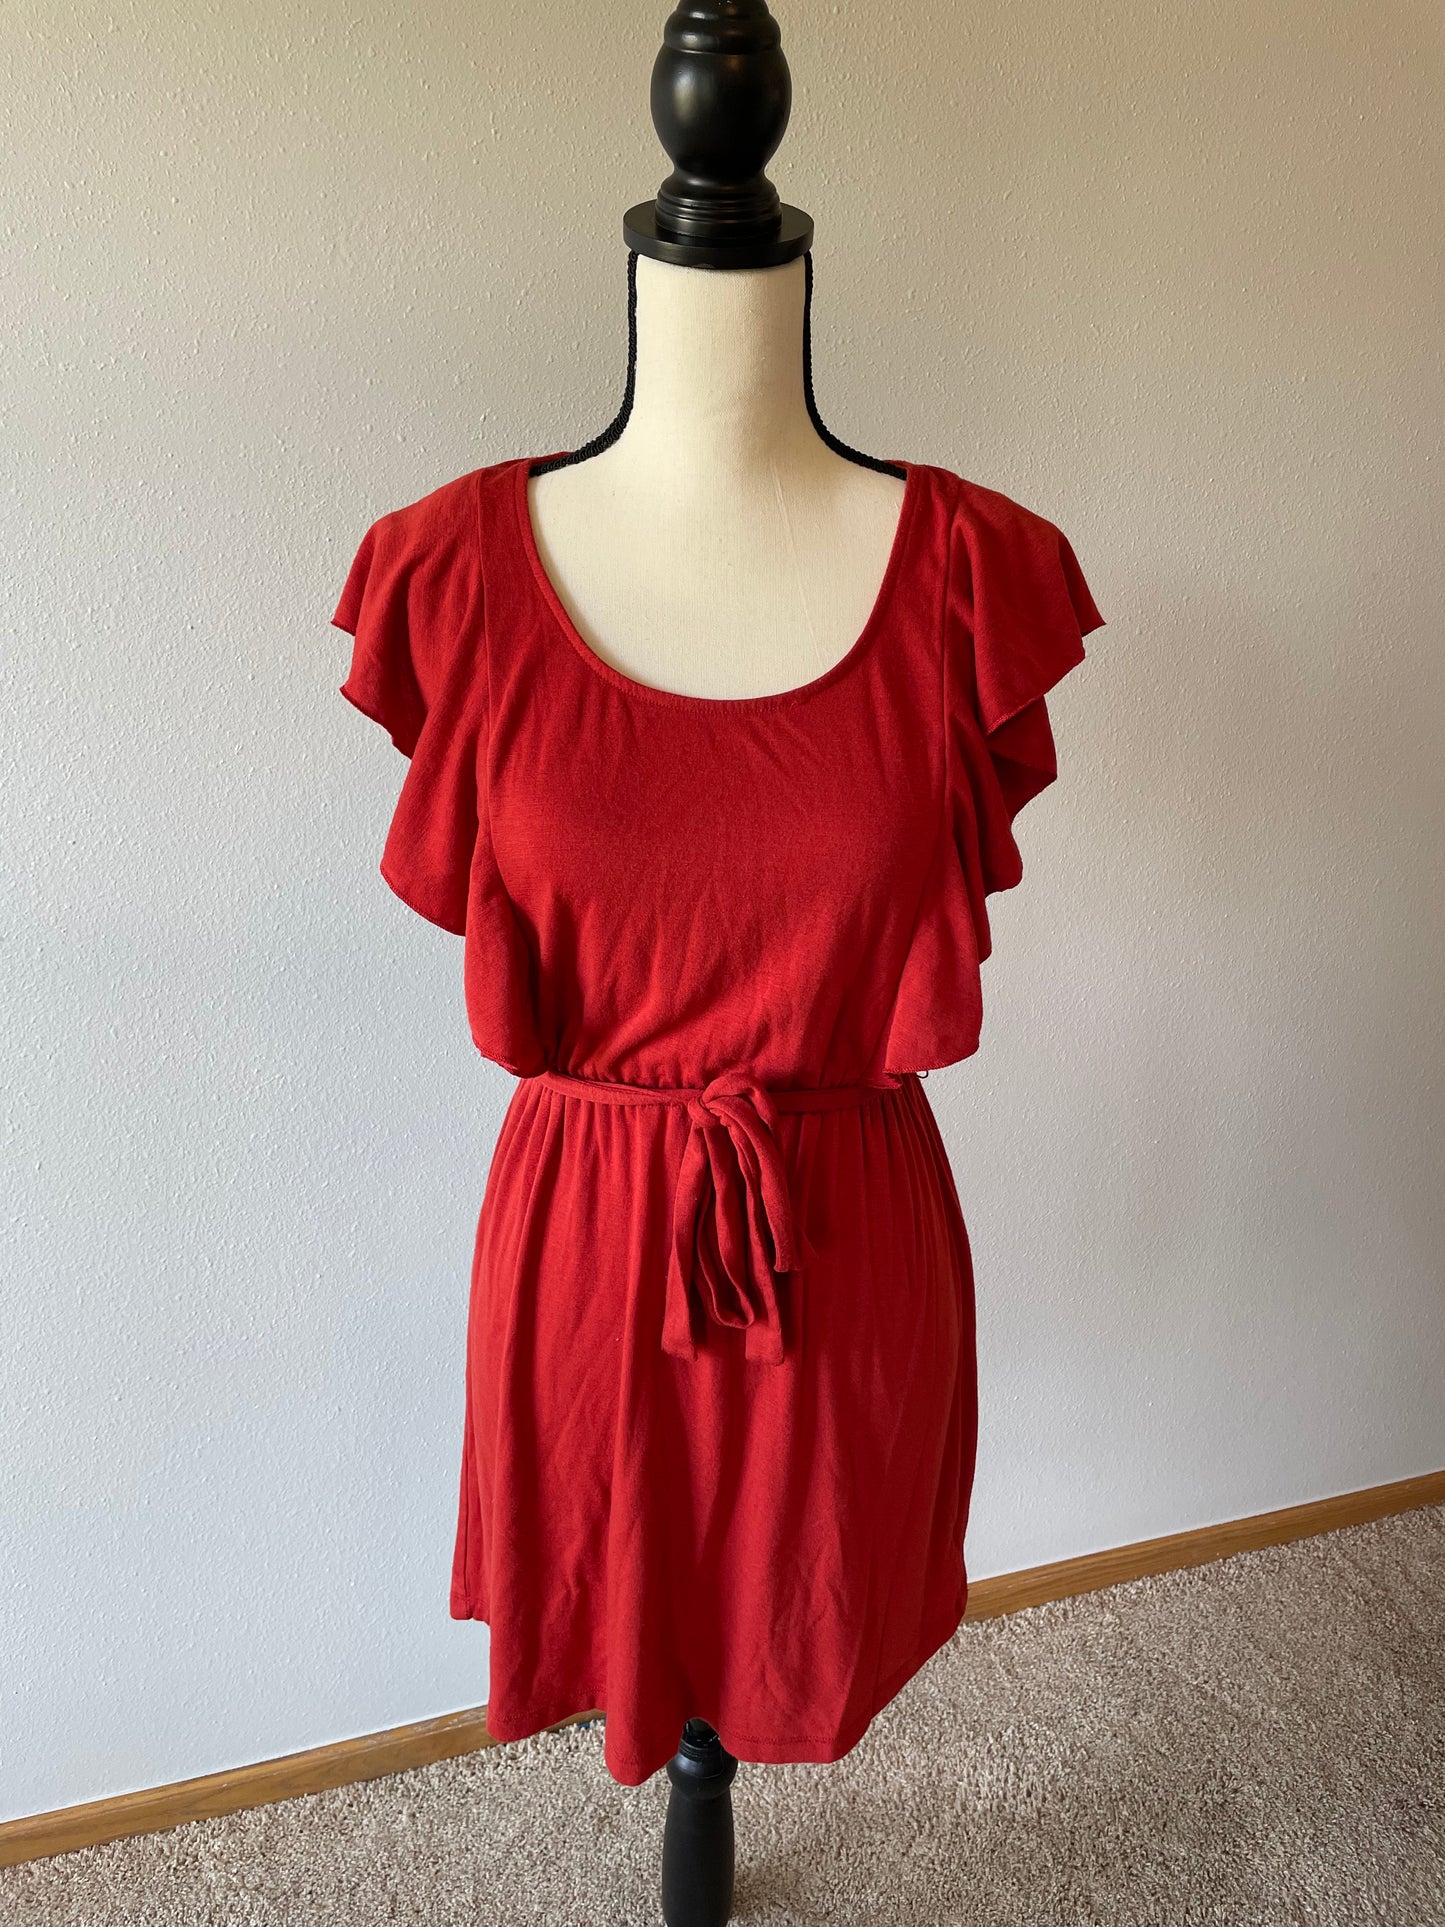 Xhilaration Red Knit Tie Waist Dress (M)